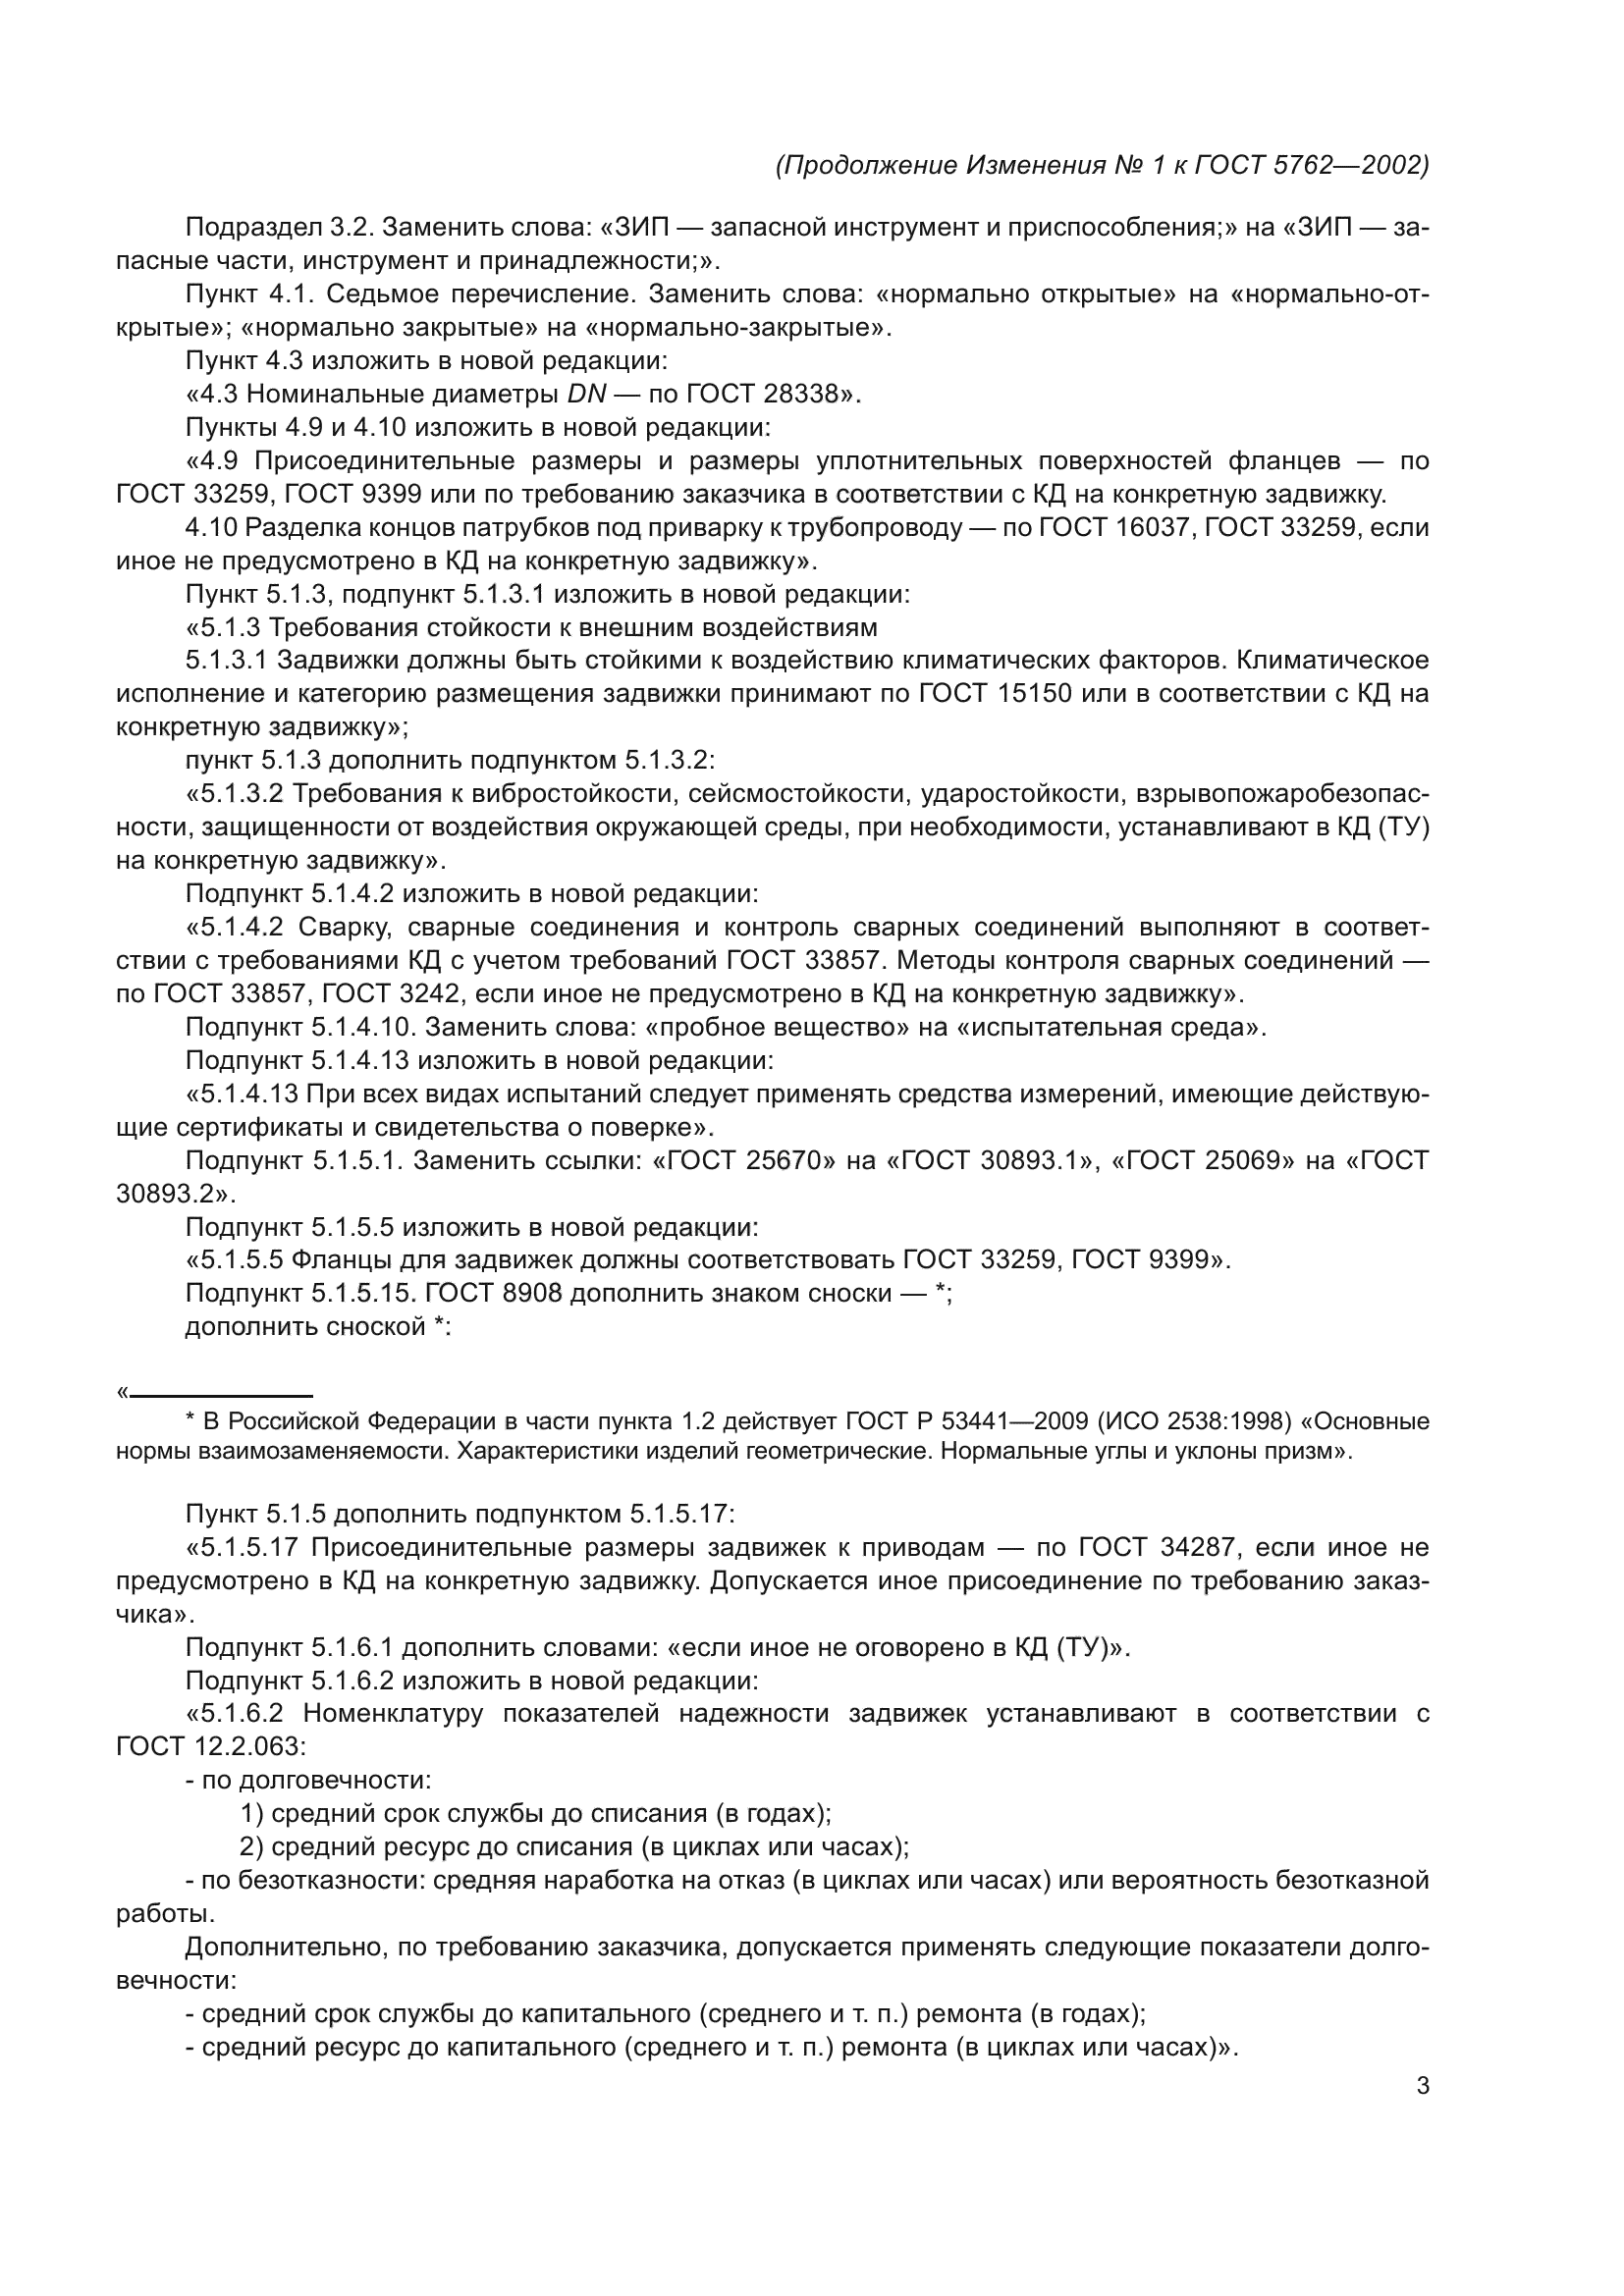 Изменение №1 к ГОСТ 5762-2002